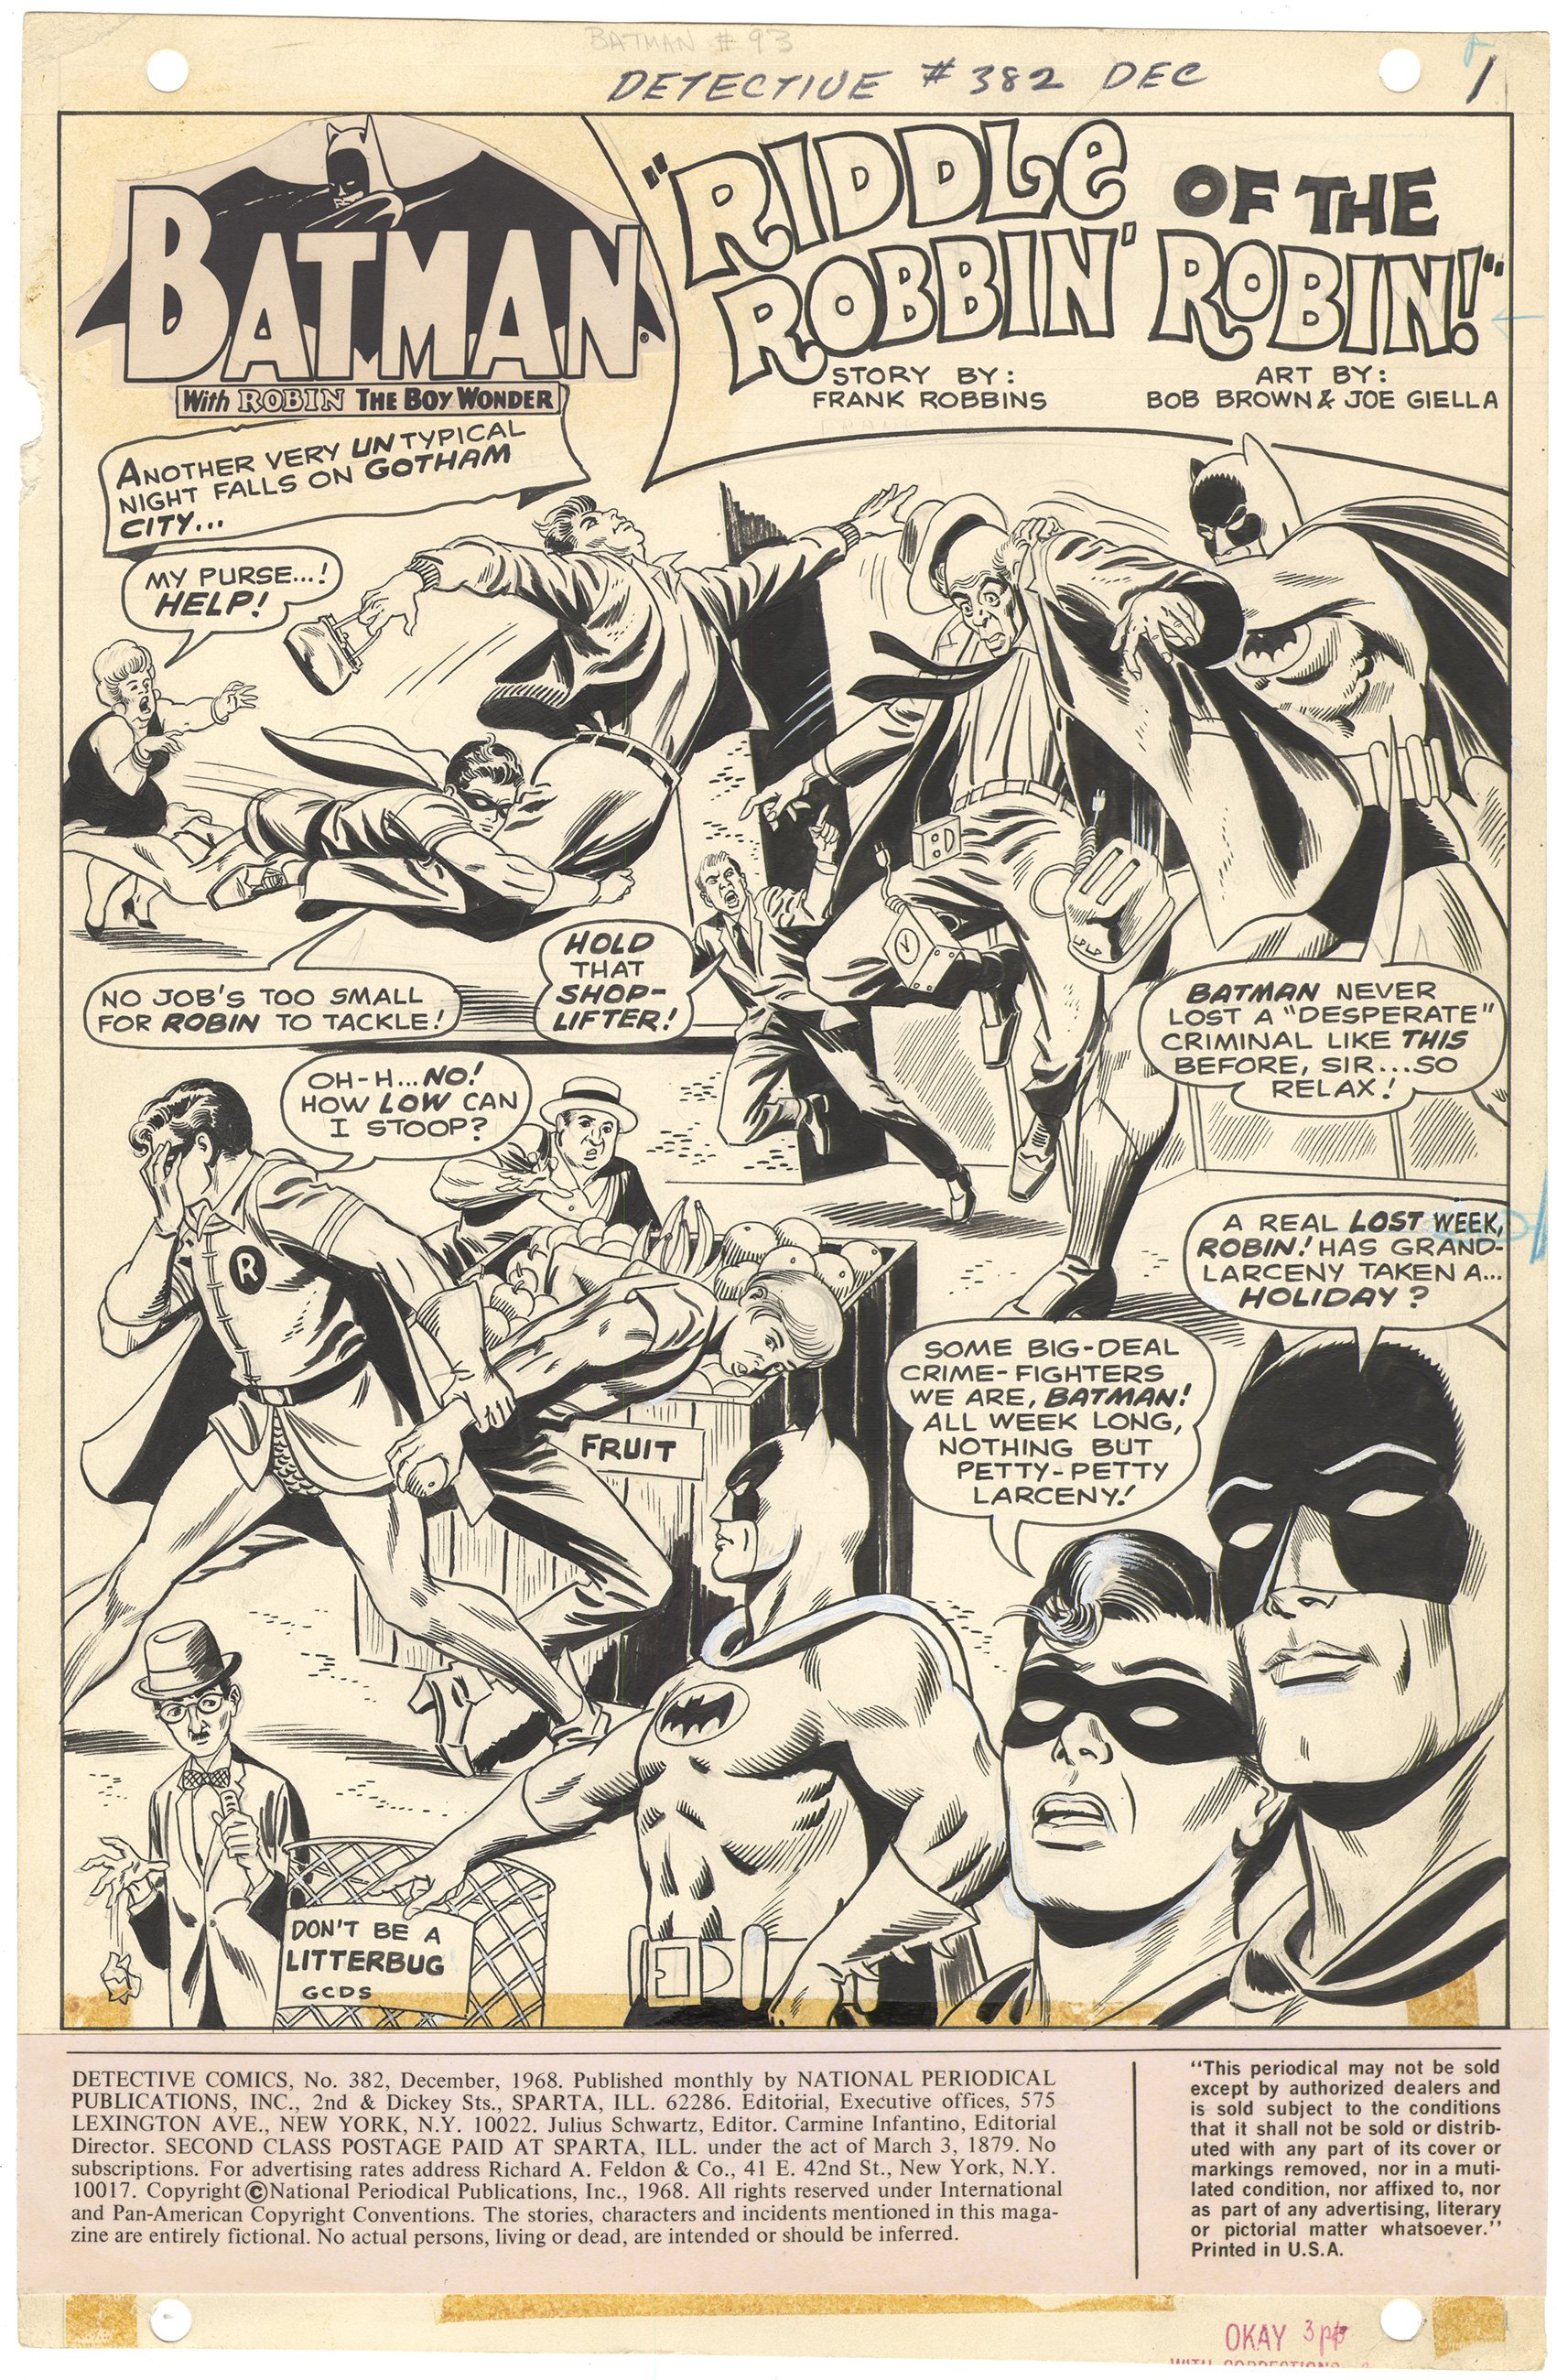 Detective Comics #382 p1